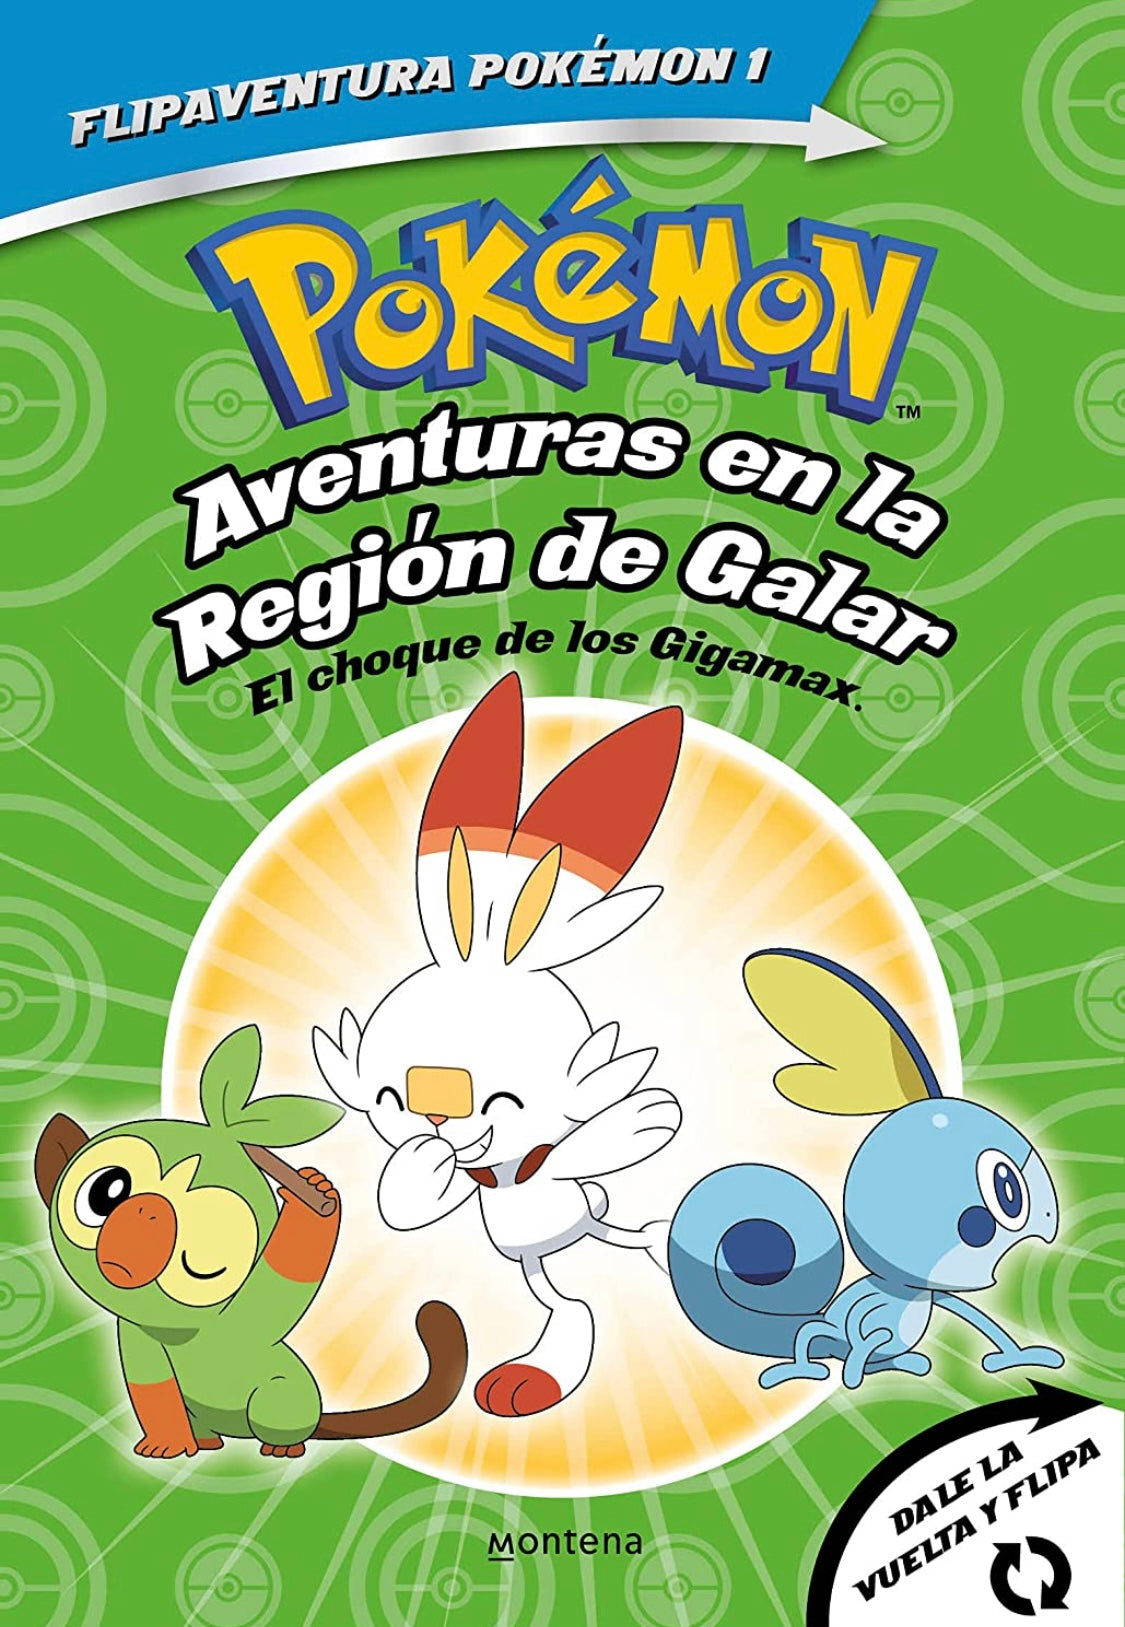 Pokemon Aventuras en la Región de Galar